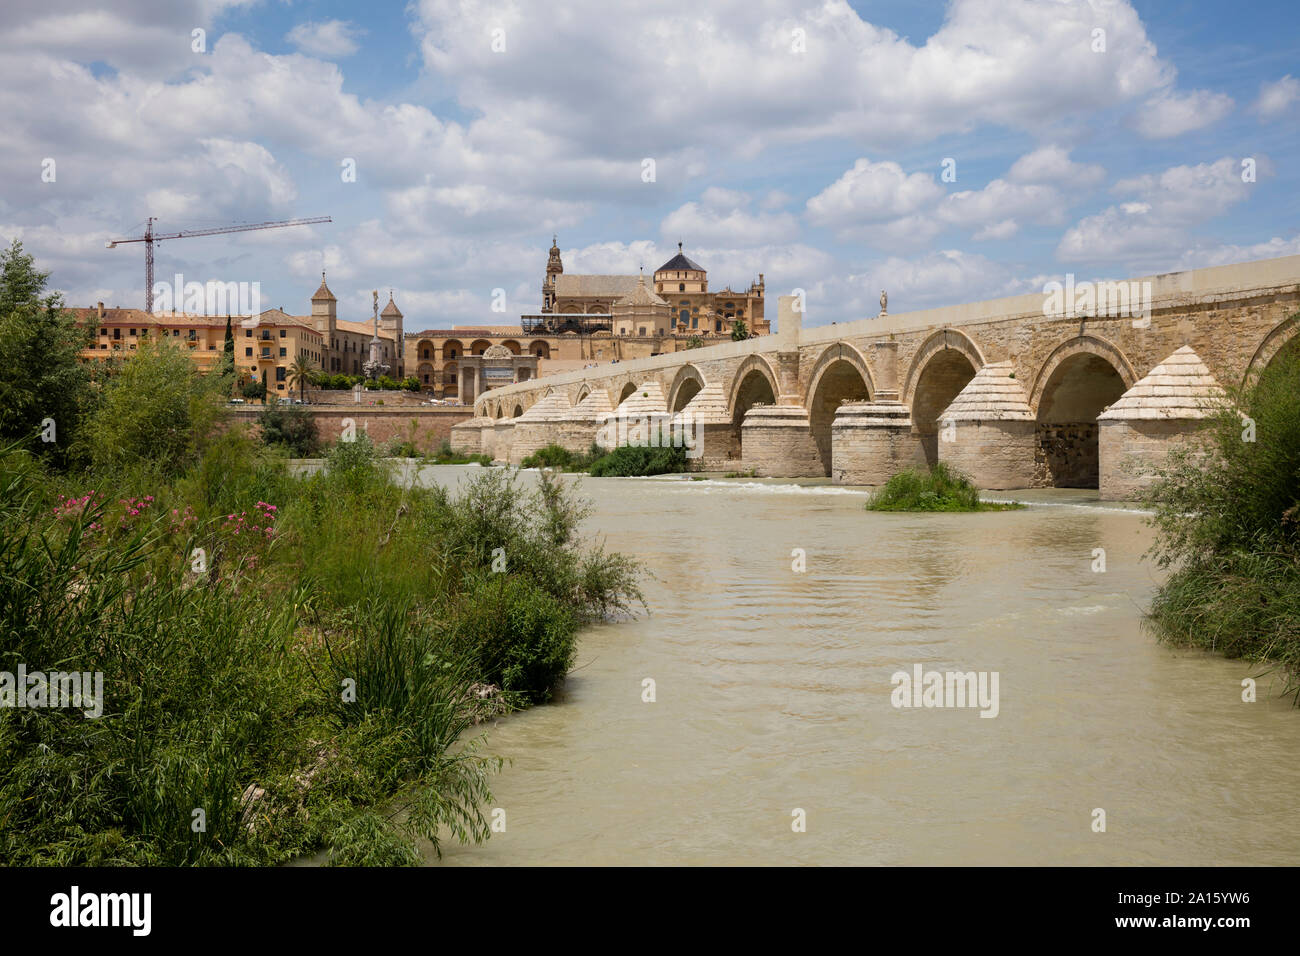 Spanien, Andalusien, Cordoba, Altstadt, Moschee - Kathedrale von Cordoba, Puente Romano, Römische Brücke Stockfoto